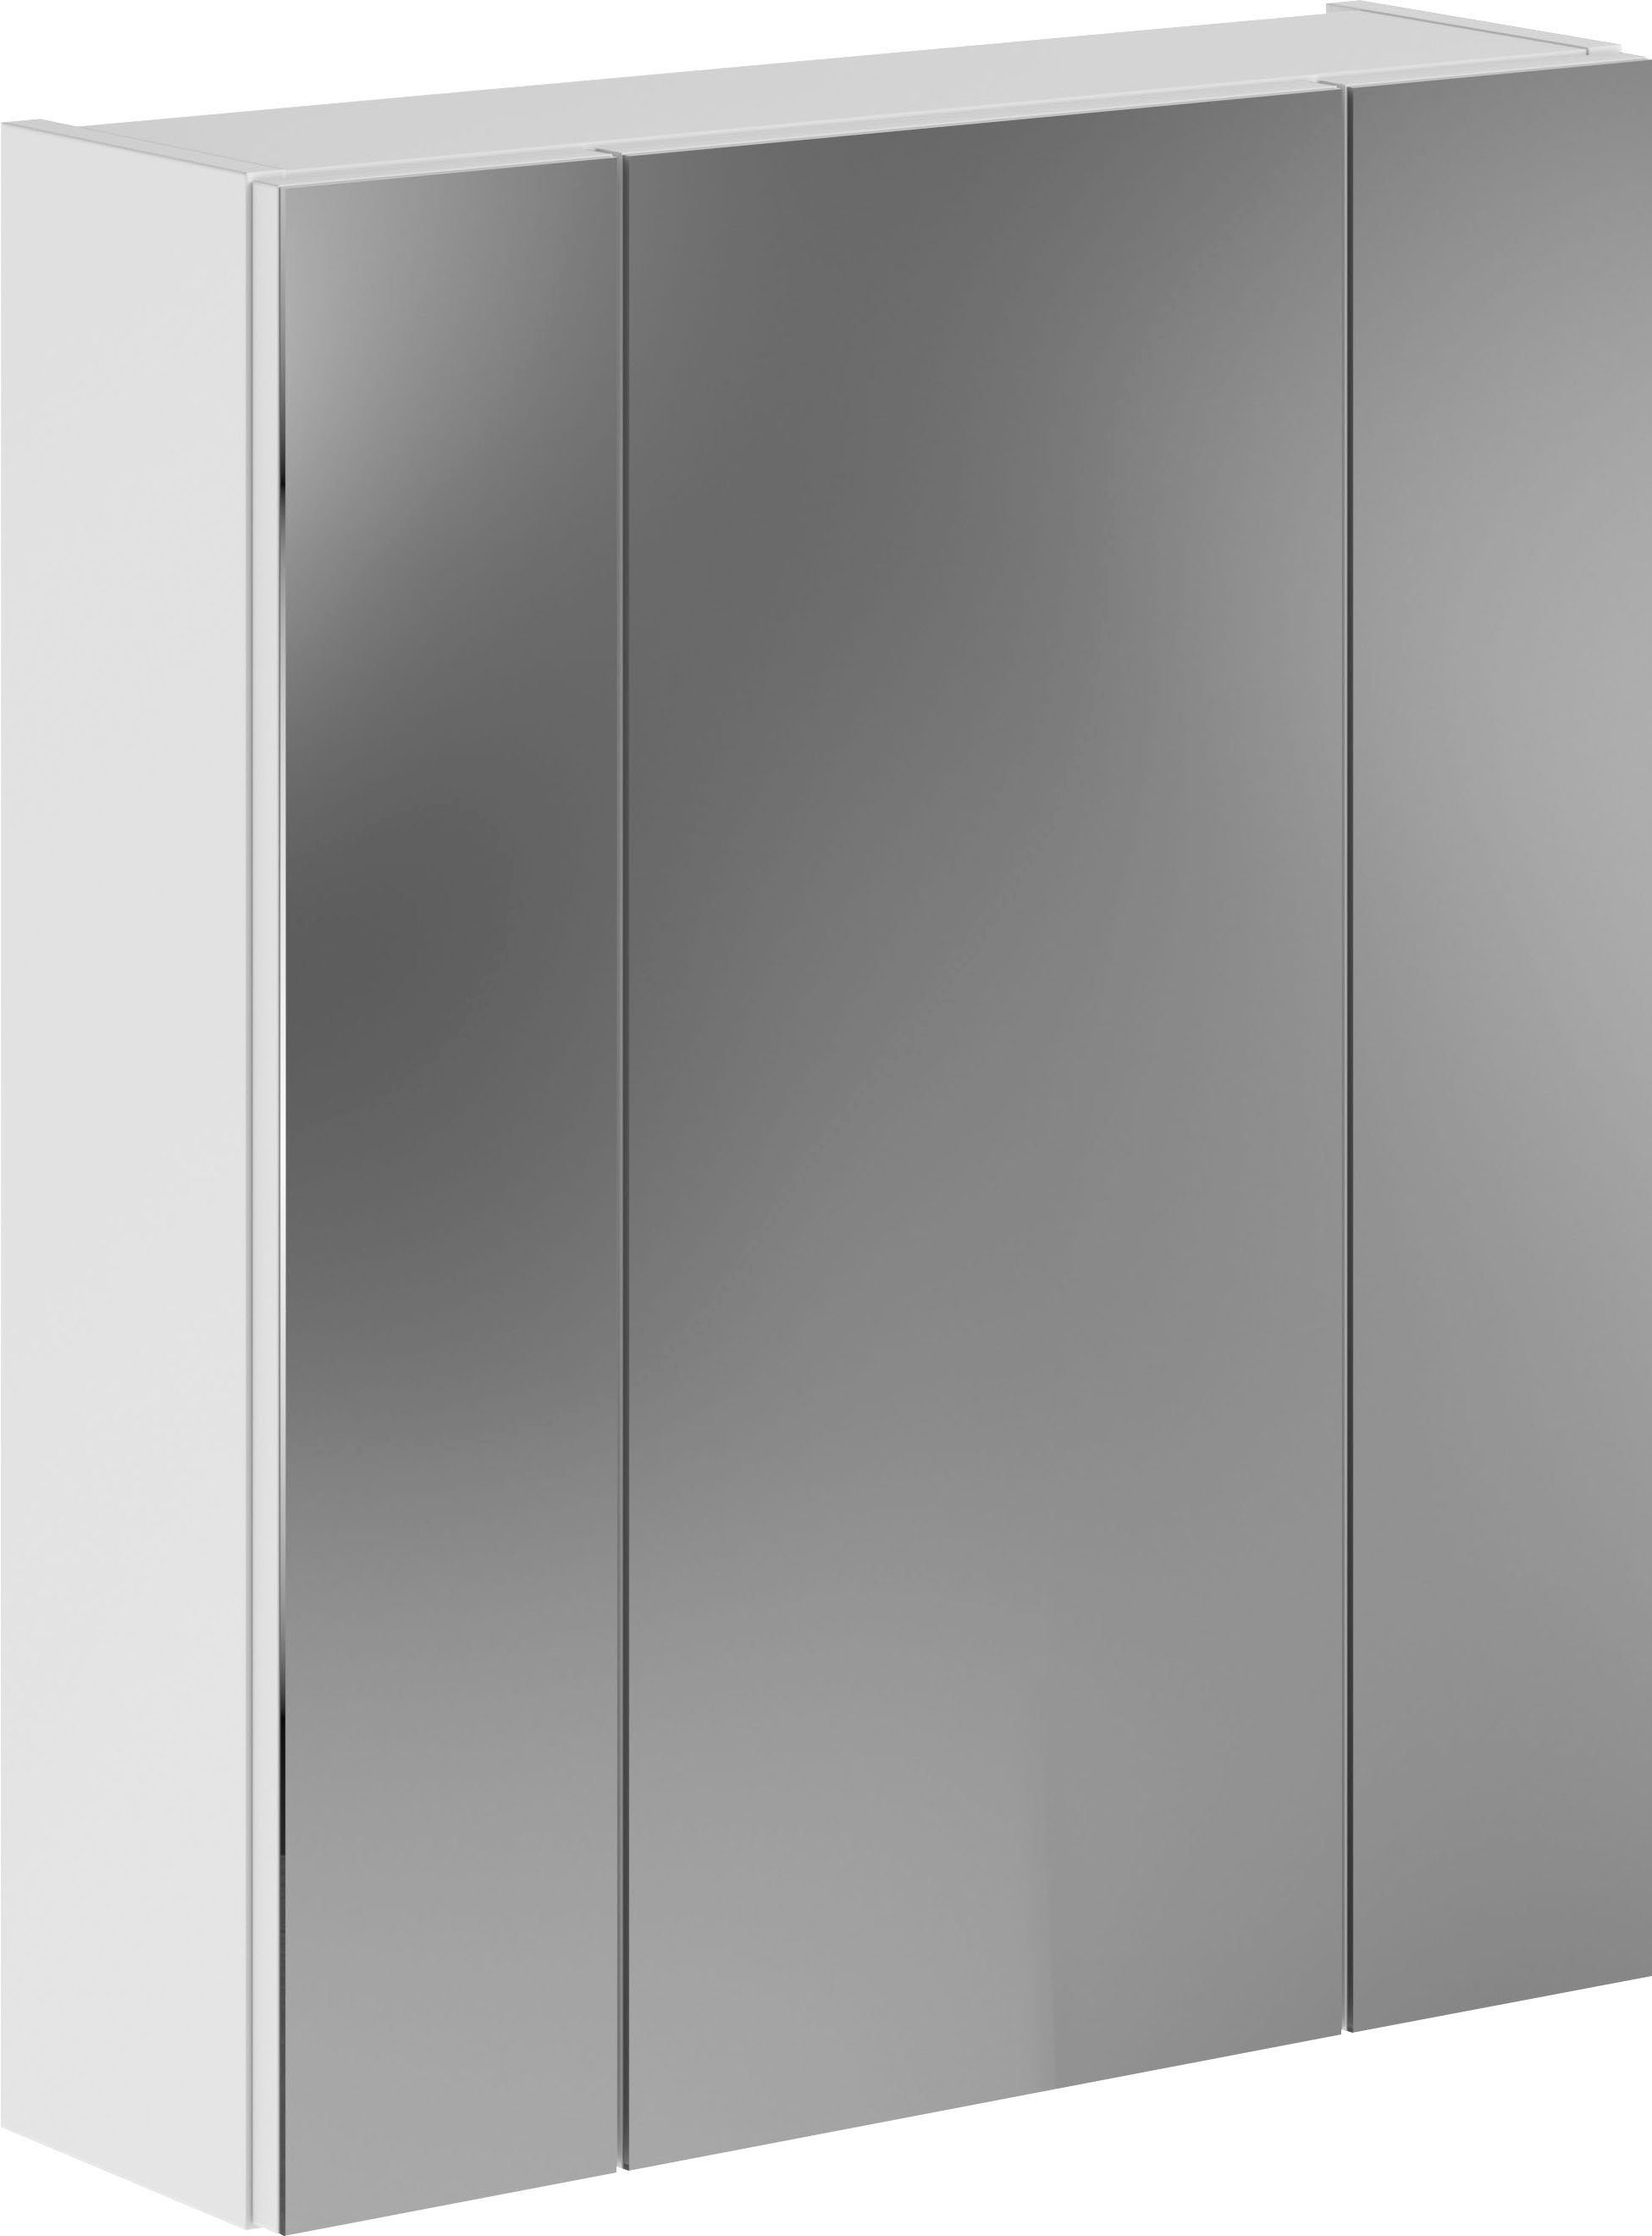 xonox.home Badkamerspiegelkast Linus Badkamermeubel, spiegelkast, breedte 60 cm